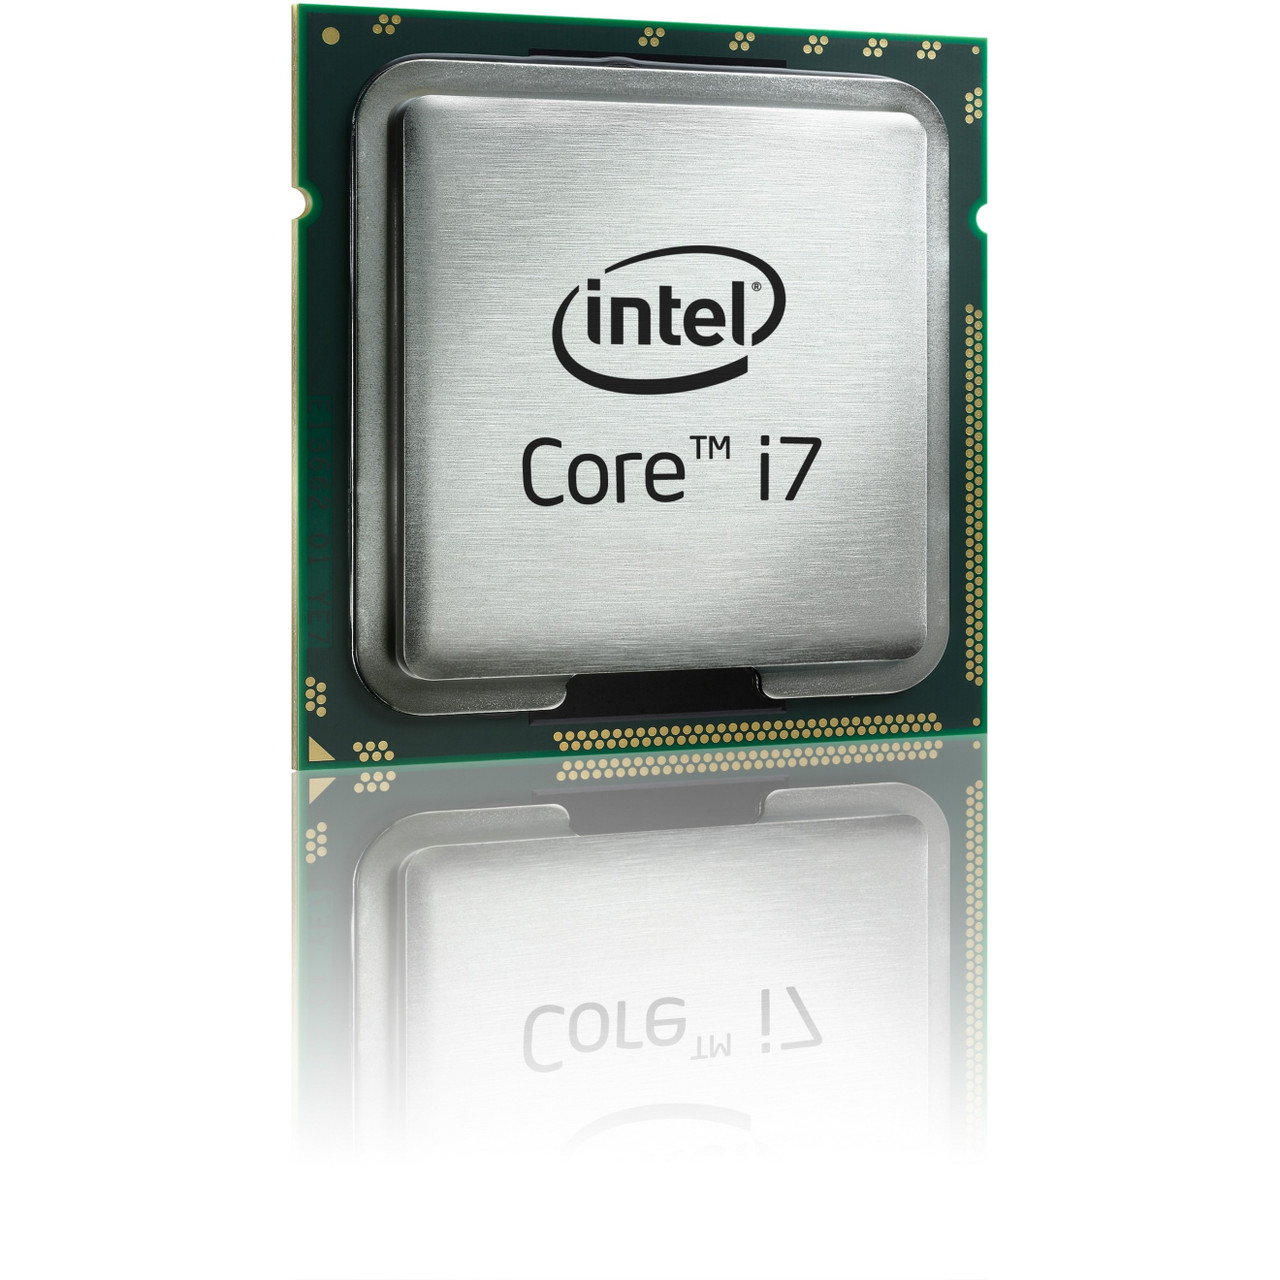 Intel Core i7 i7-4700 i7-4790S Quad-core (4 Core) 3.20 GHz Processor - OEM Pack - CM8064601561014